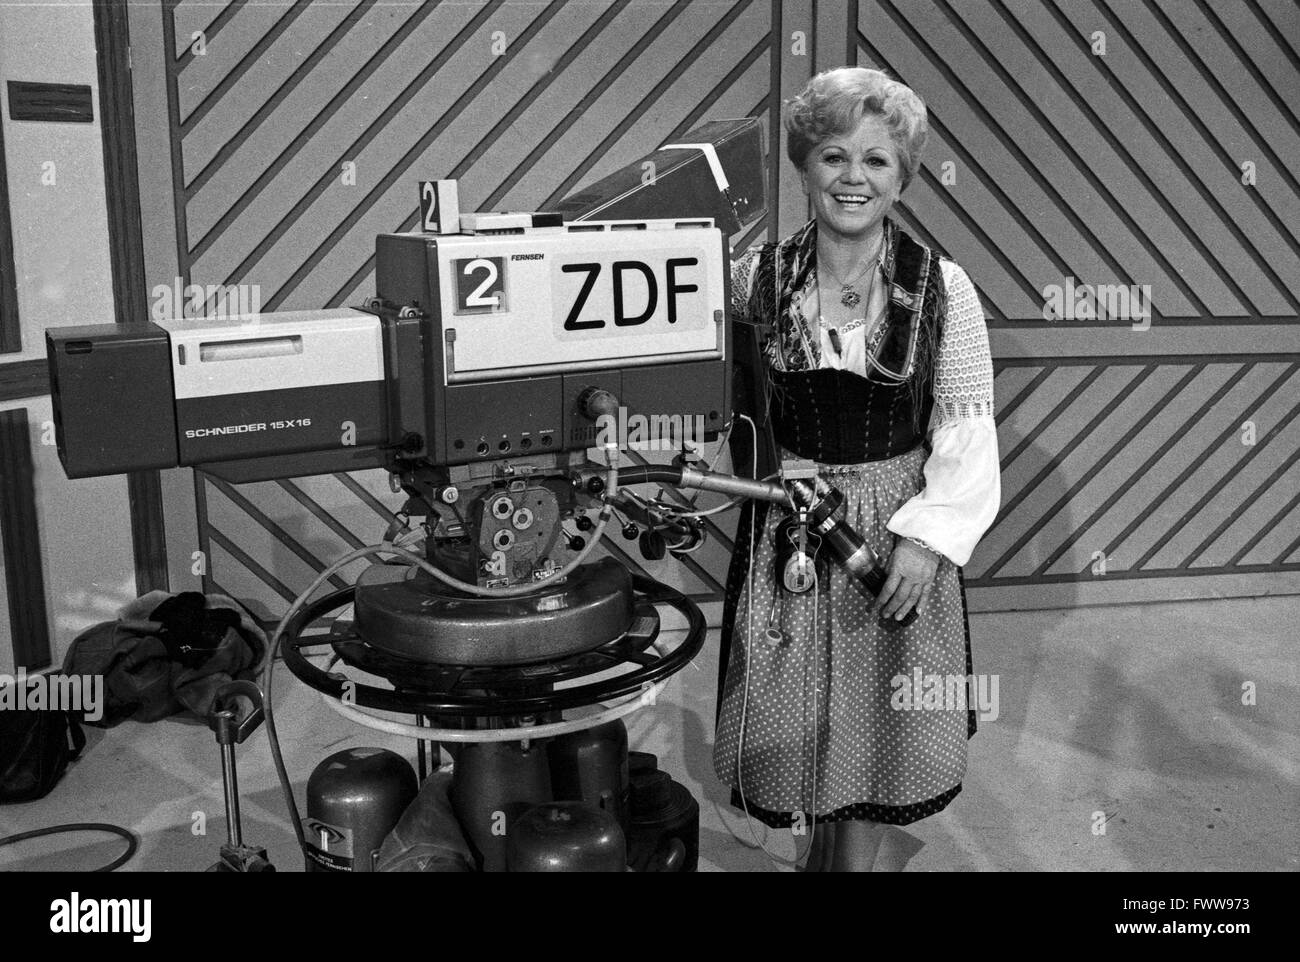 Früh übt sich, Maria Hellwig präsentiert junge Talente der Volksmusik, Deutschland 1981 Stock Photo